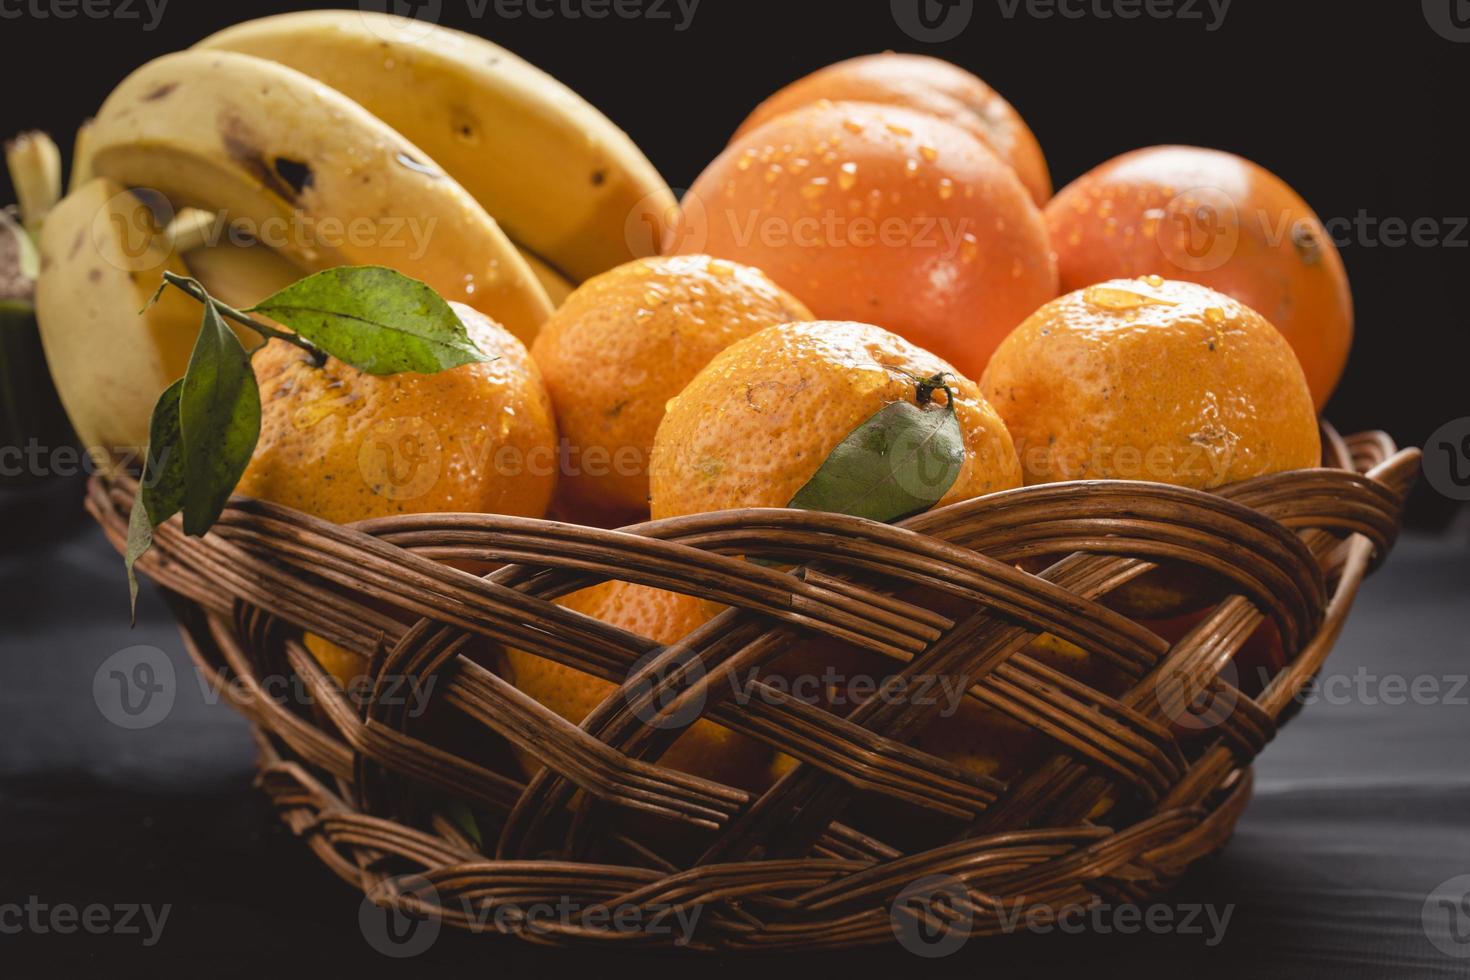 un plato de frutas frescas de invierno, plátano, naranja y mandarina foto